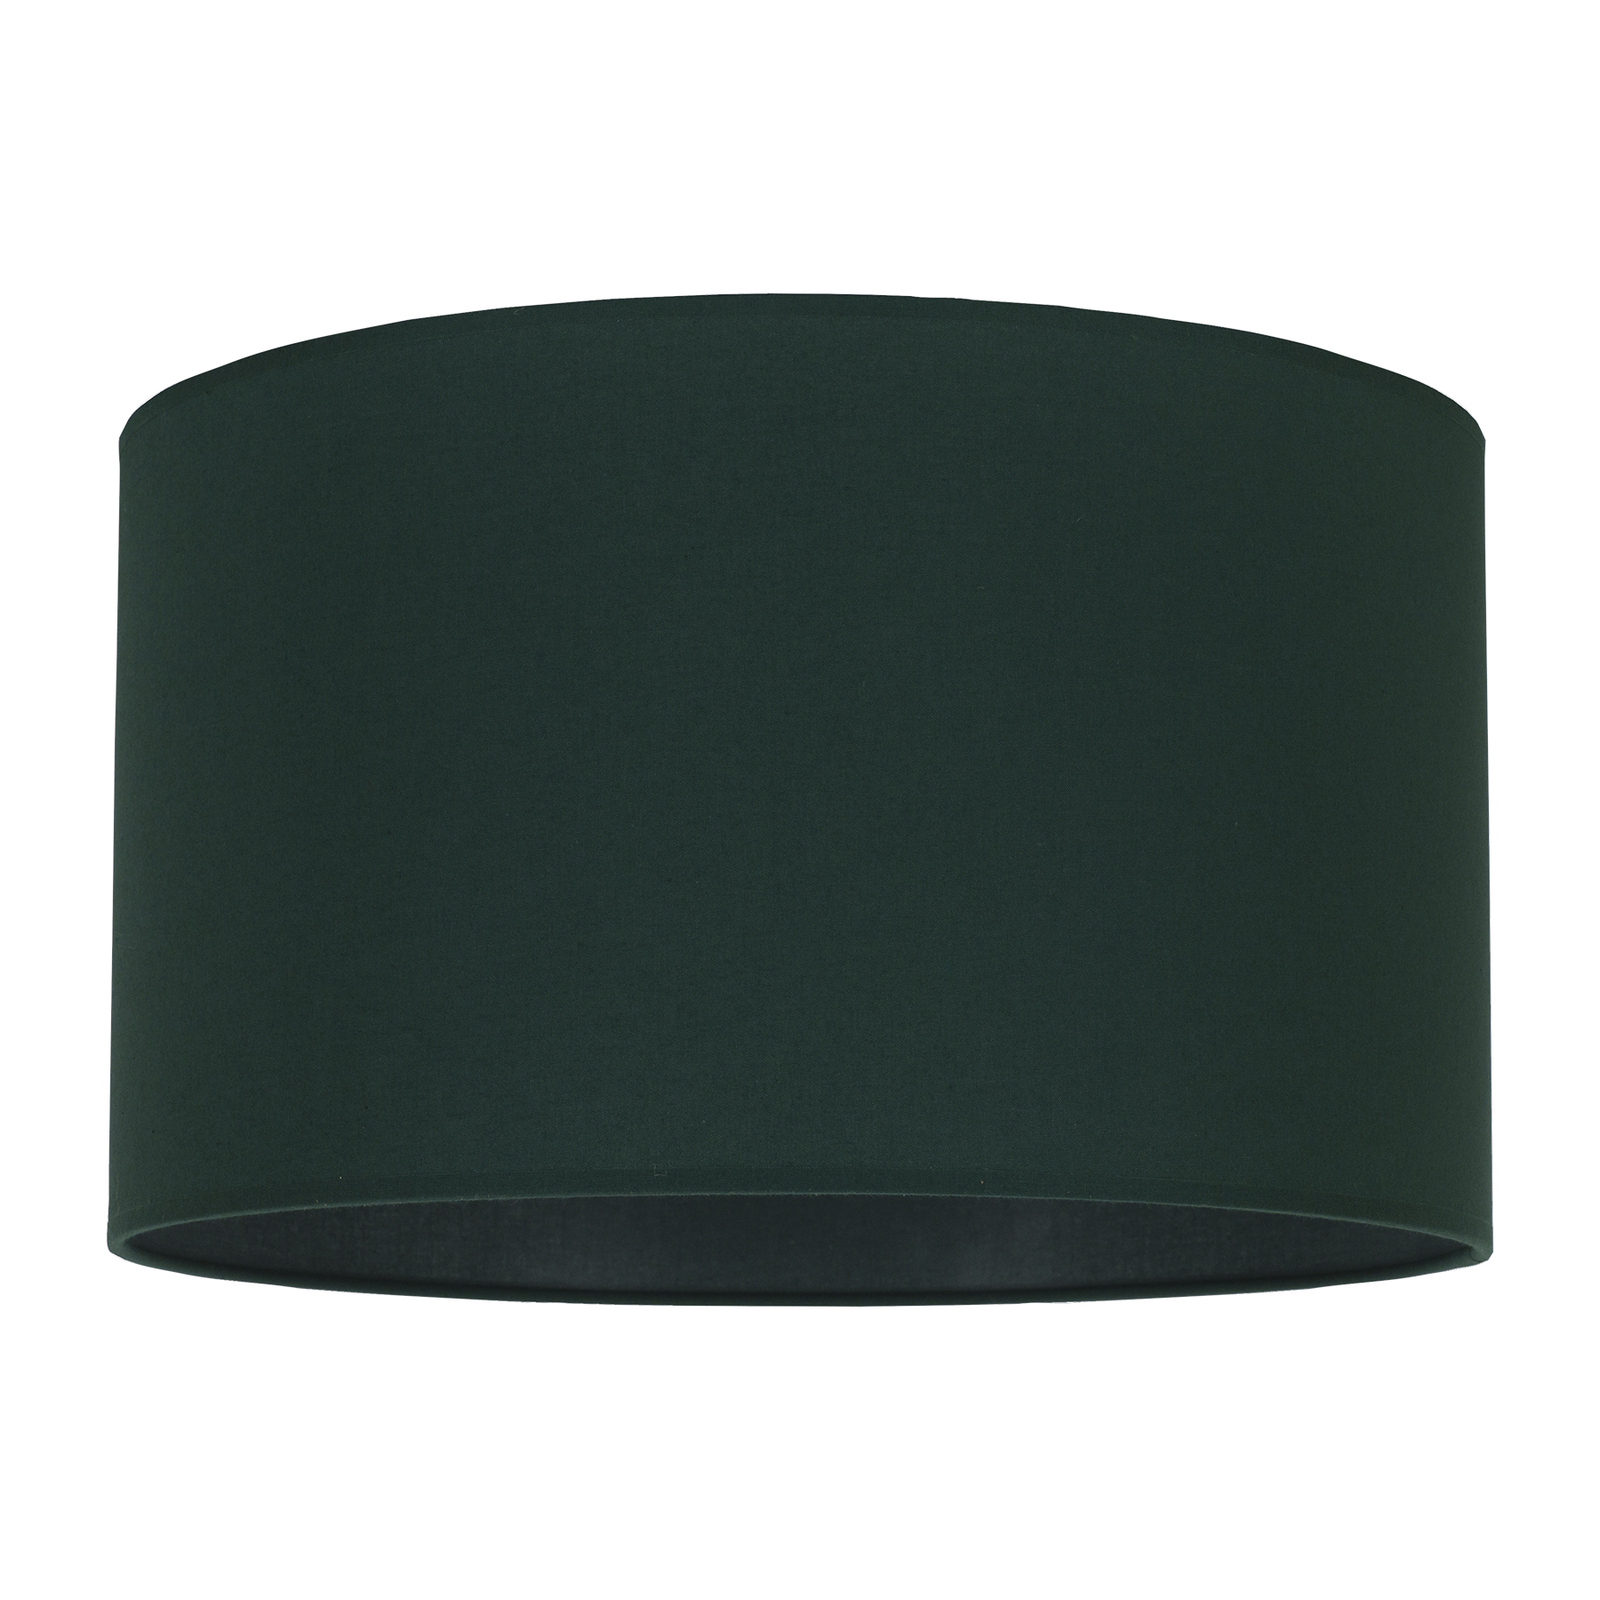 Klosz lampy Roller, zielony Ø 40 cm wysokość 22 cm